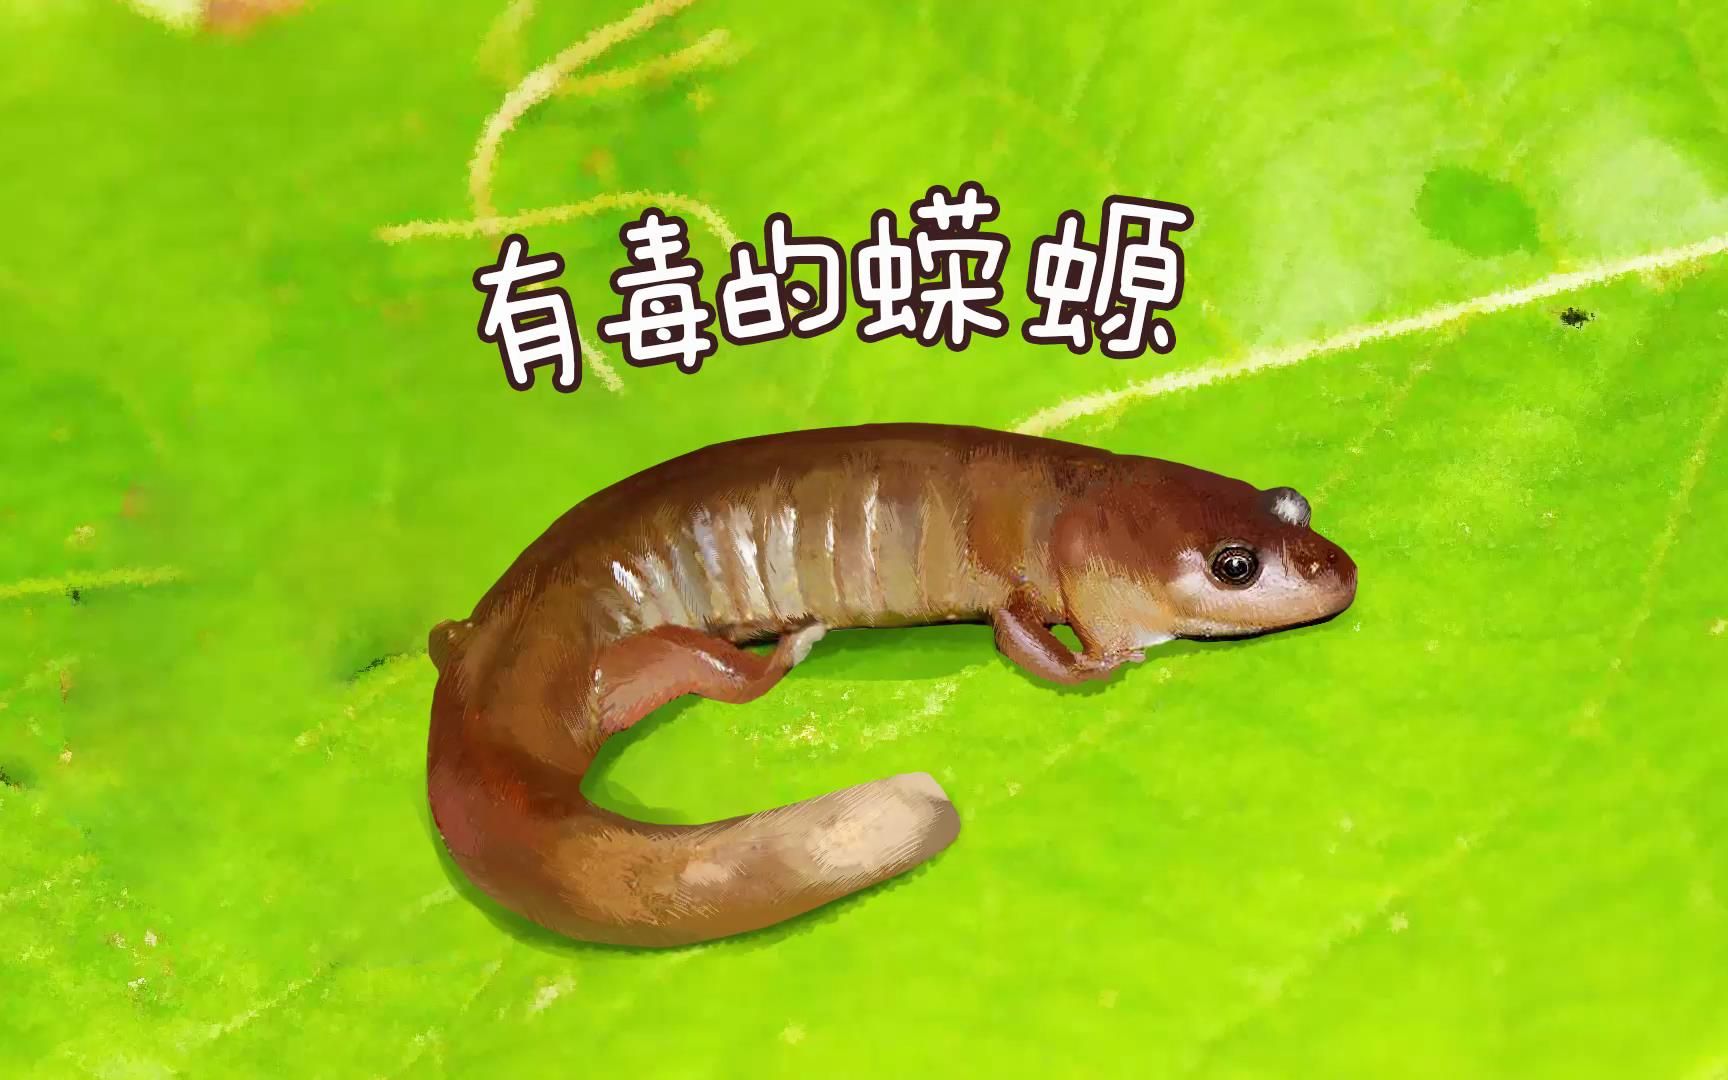 中华蝾螈有毒吗?图片